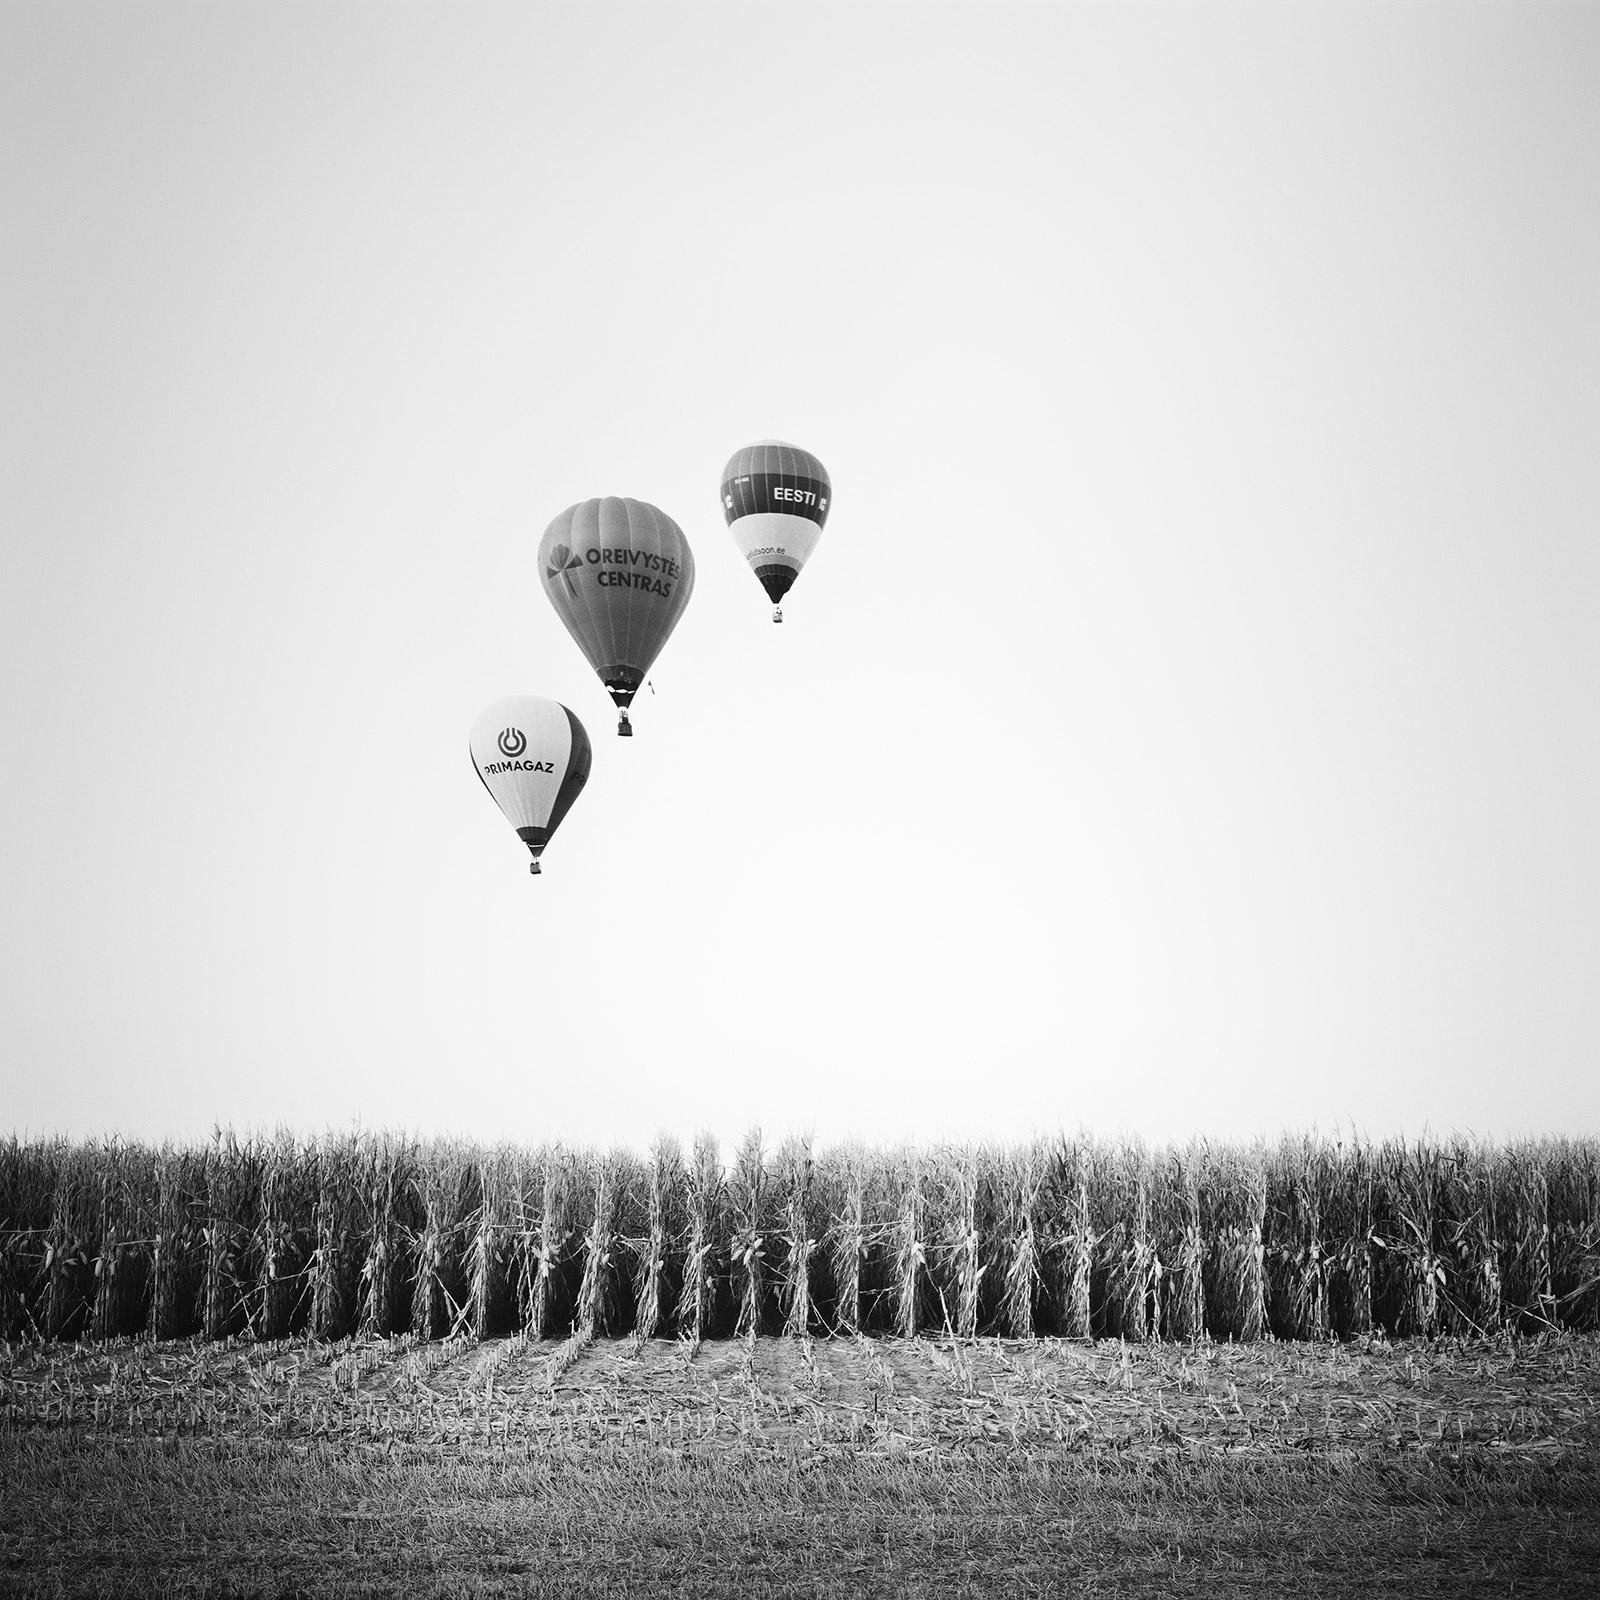 Black and White Photograph Gerald Berghammer - Tournoi des ballons d'aviation, Autriche, photographie d'art de paysage en noir et blanc